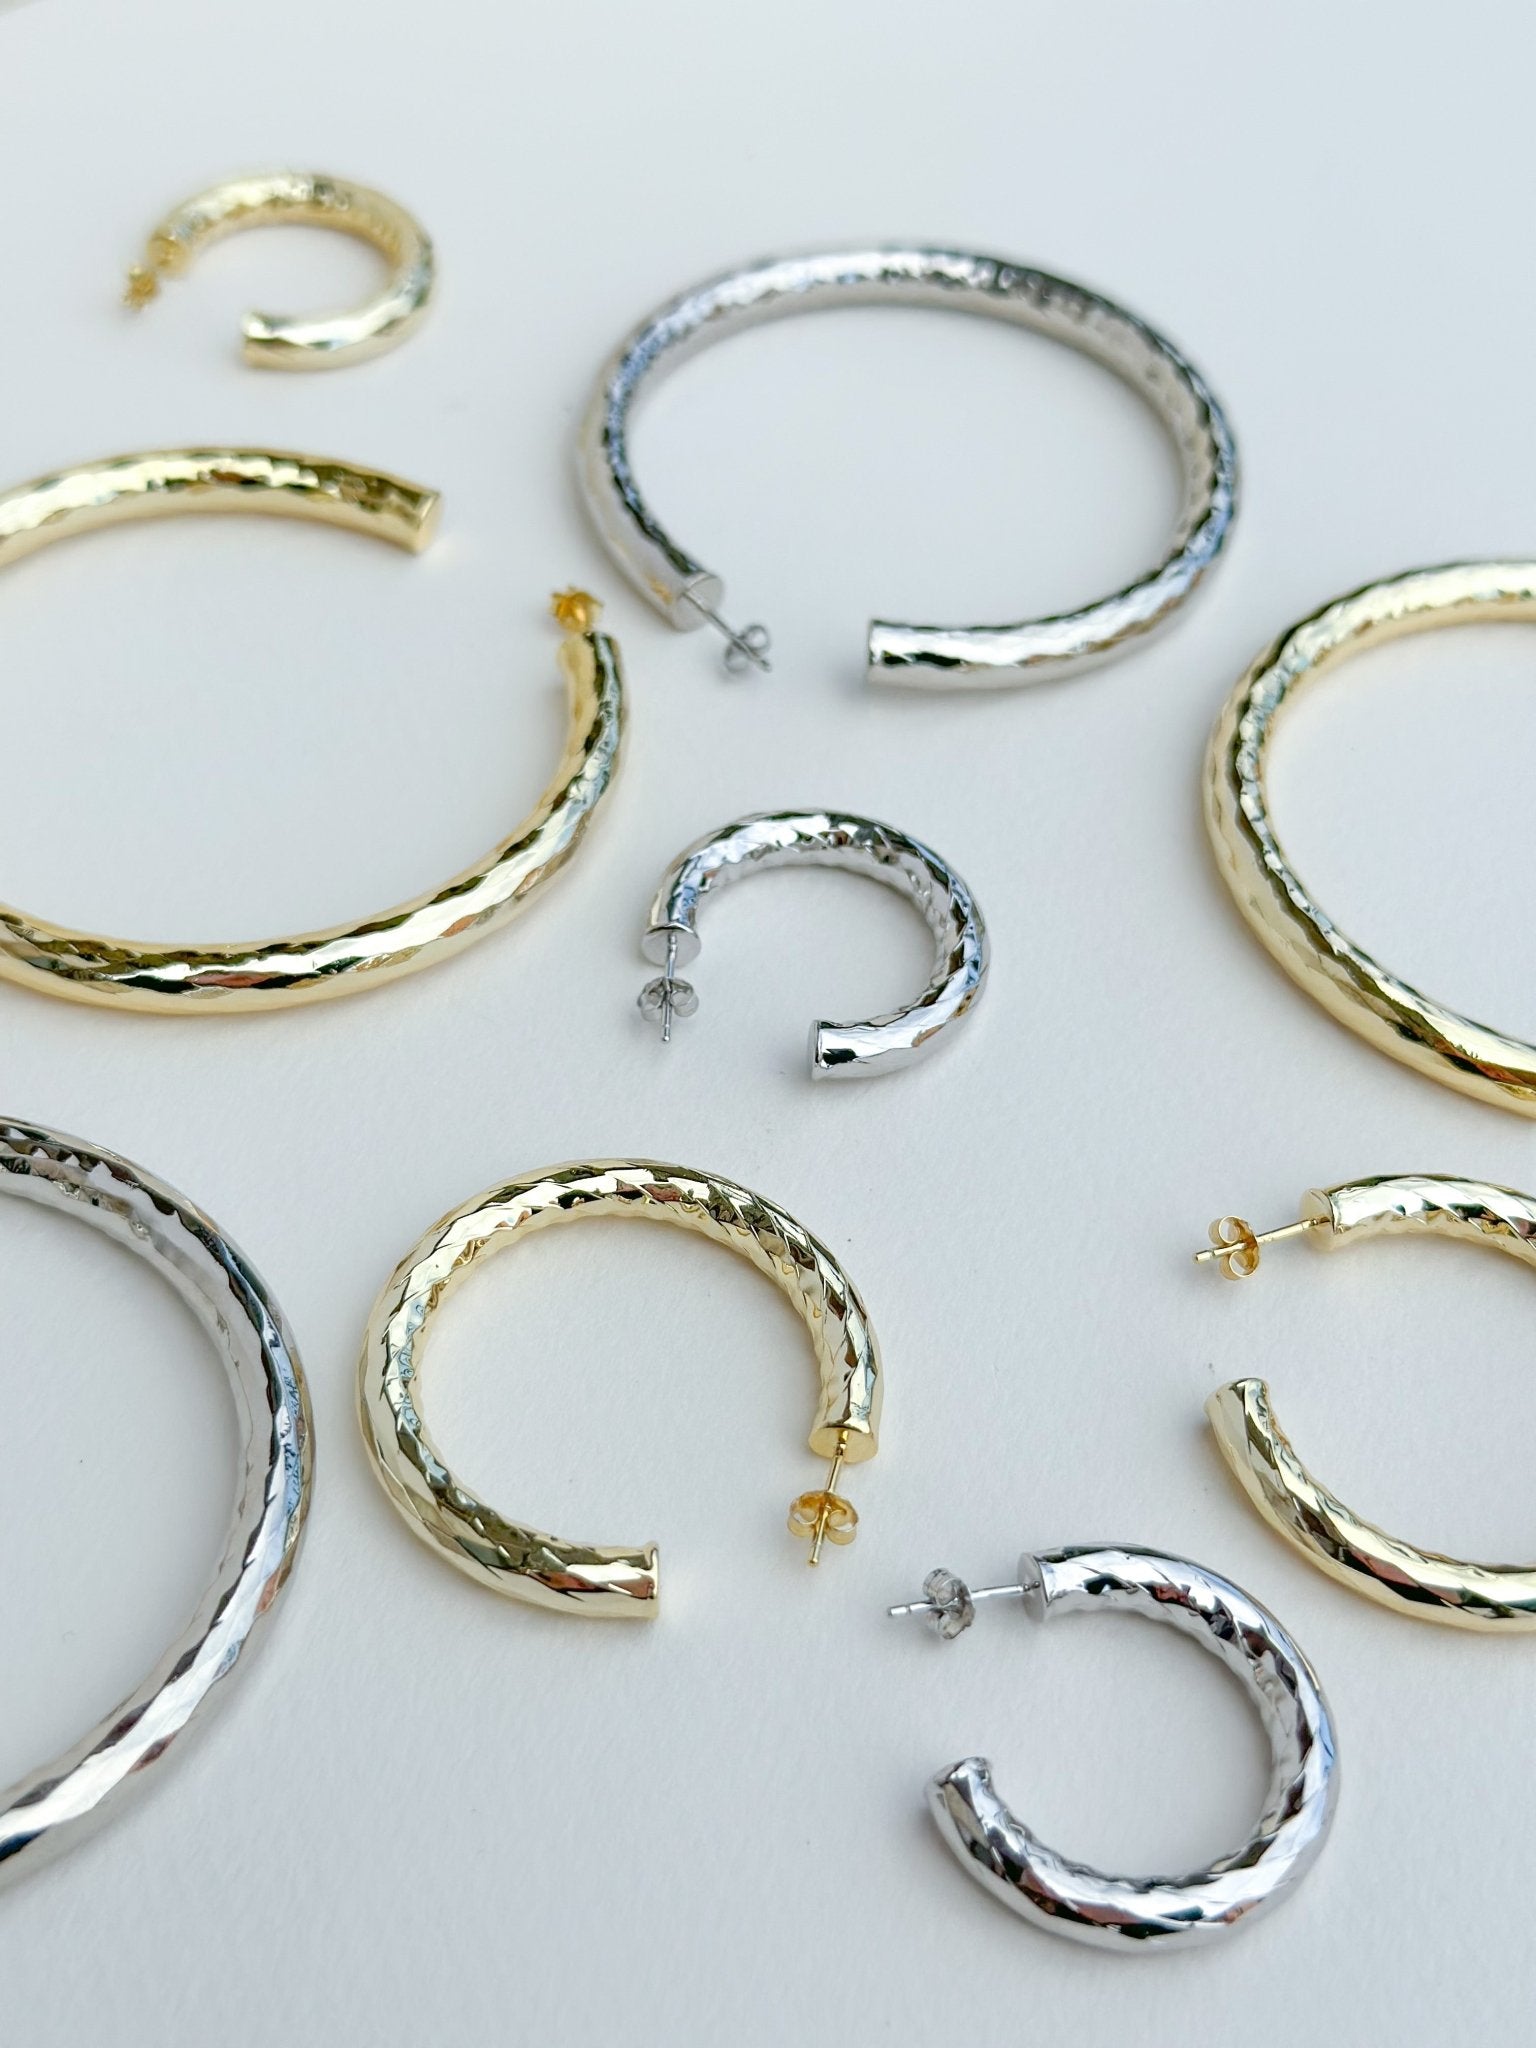 1" Wavelet Hoops in Silver - Machete Jewelry